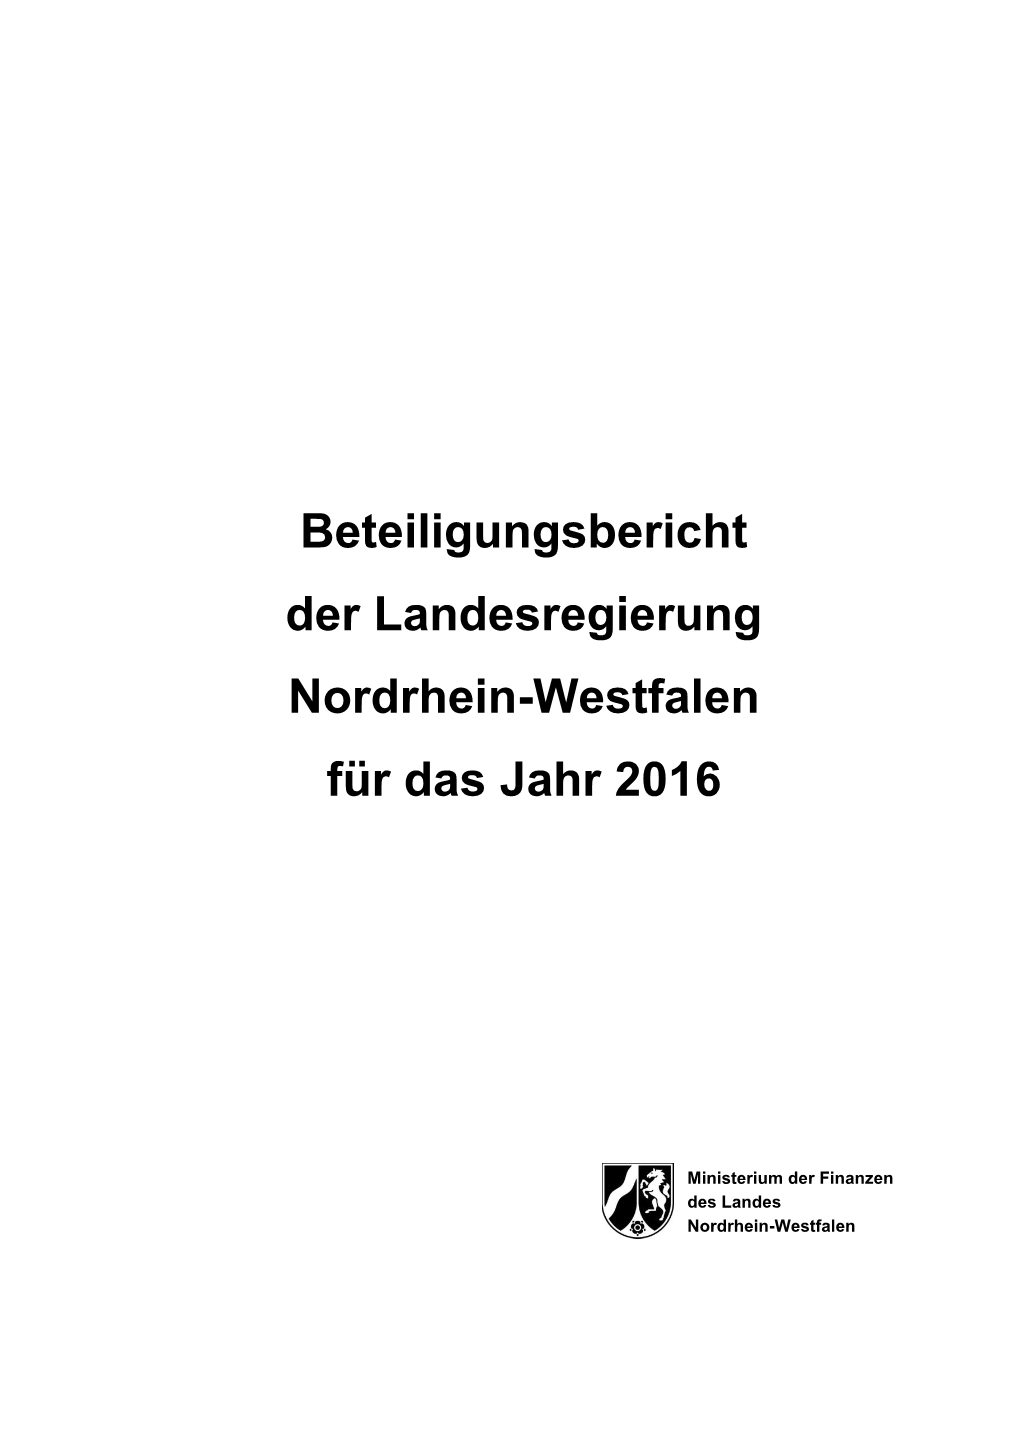 Beteiligungsbericht Der Landesregierung Nordrhein-Westfalen Für Das Jahr 2016